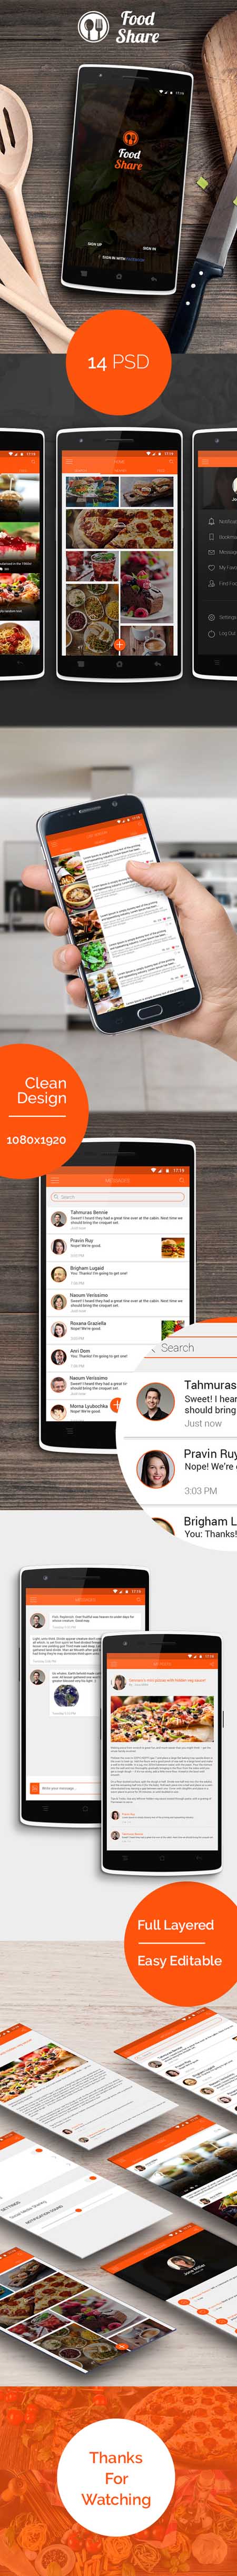 CM - Food Share - Food App Template UI 450687